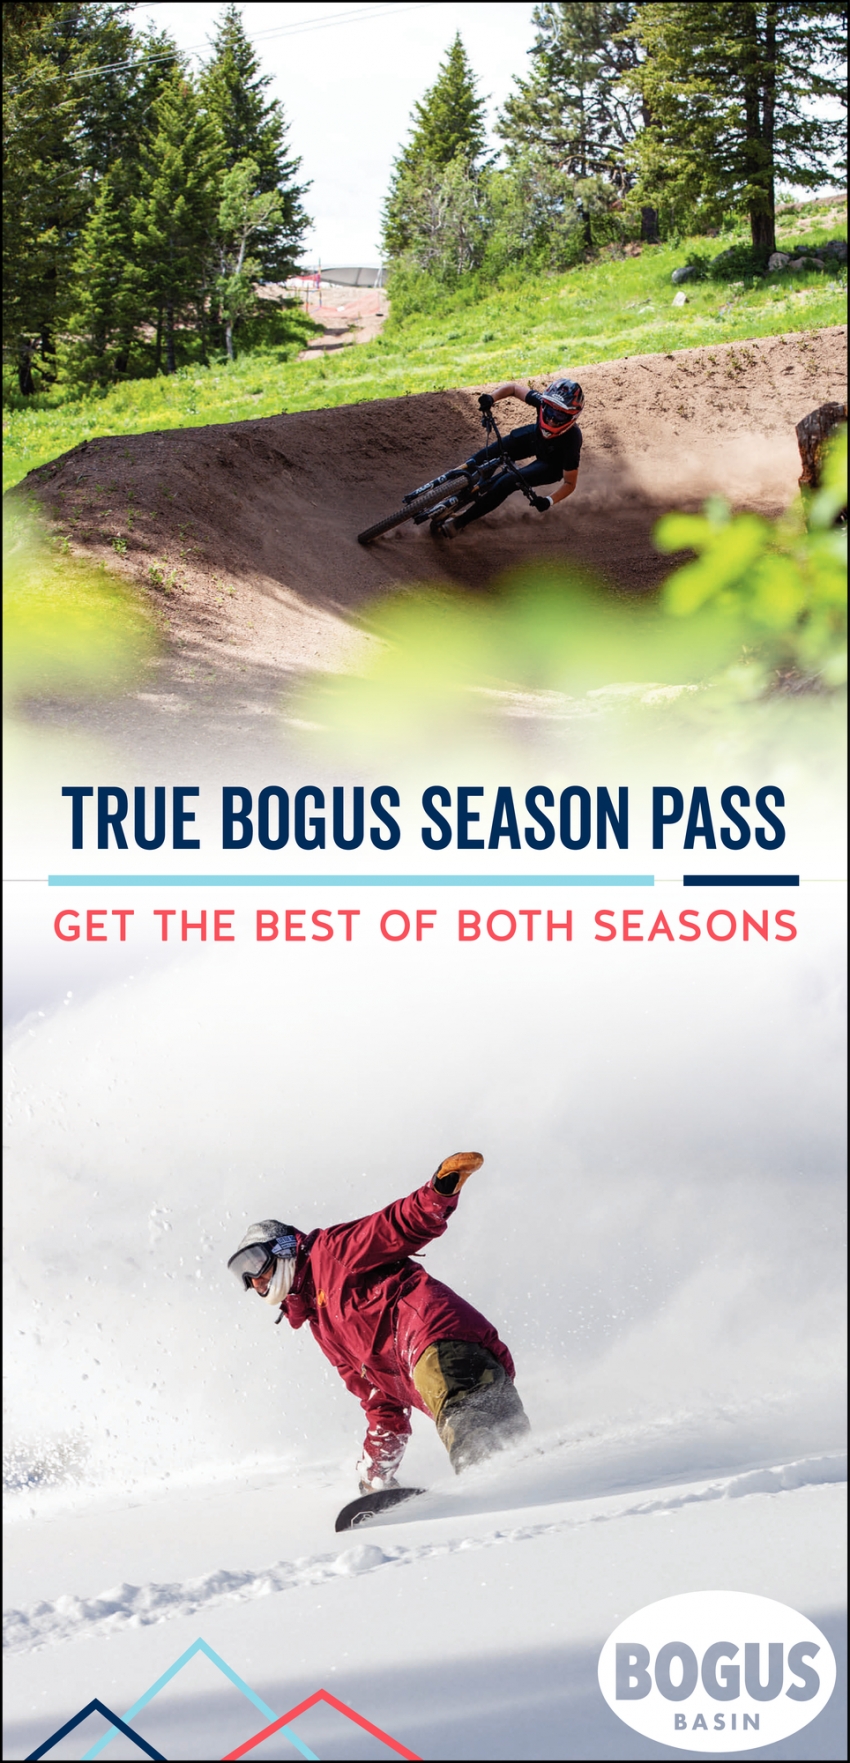 Get the Best of Both Seasons